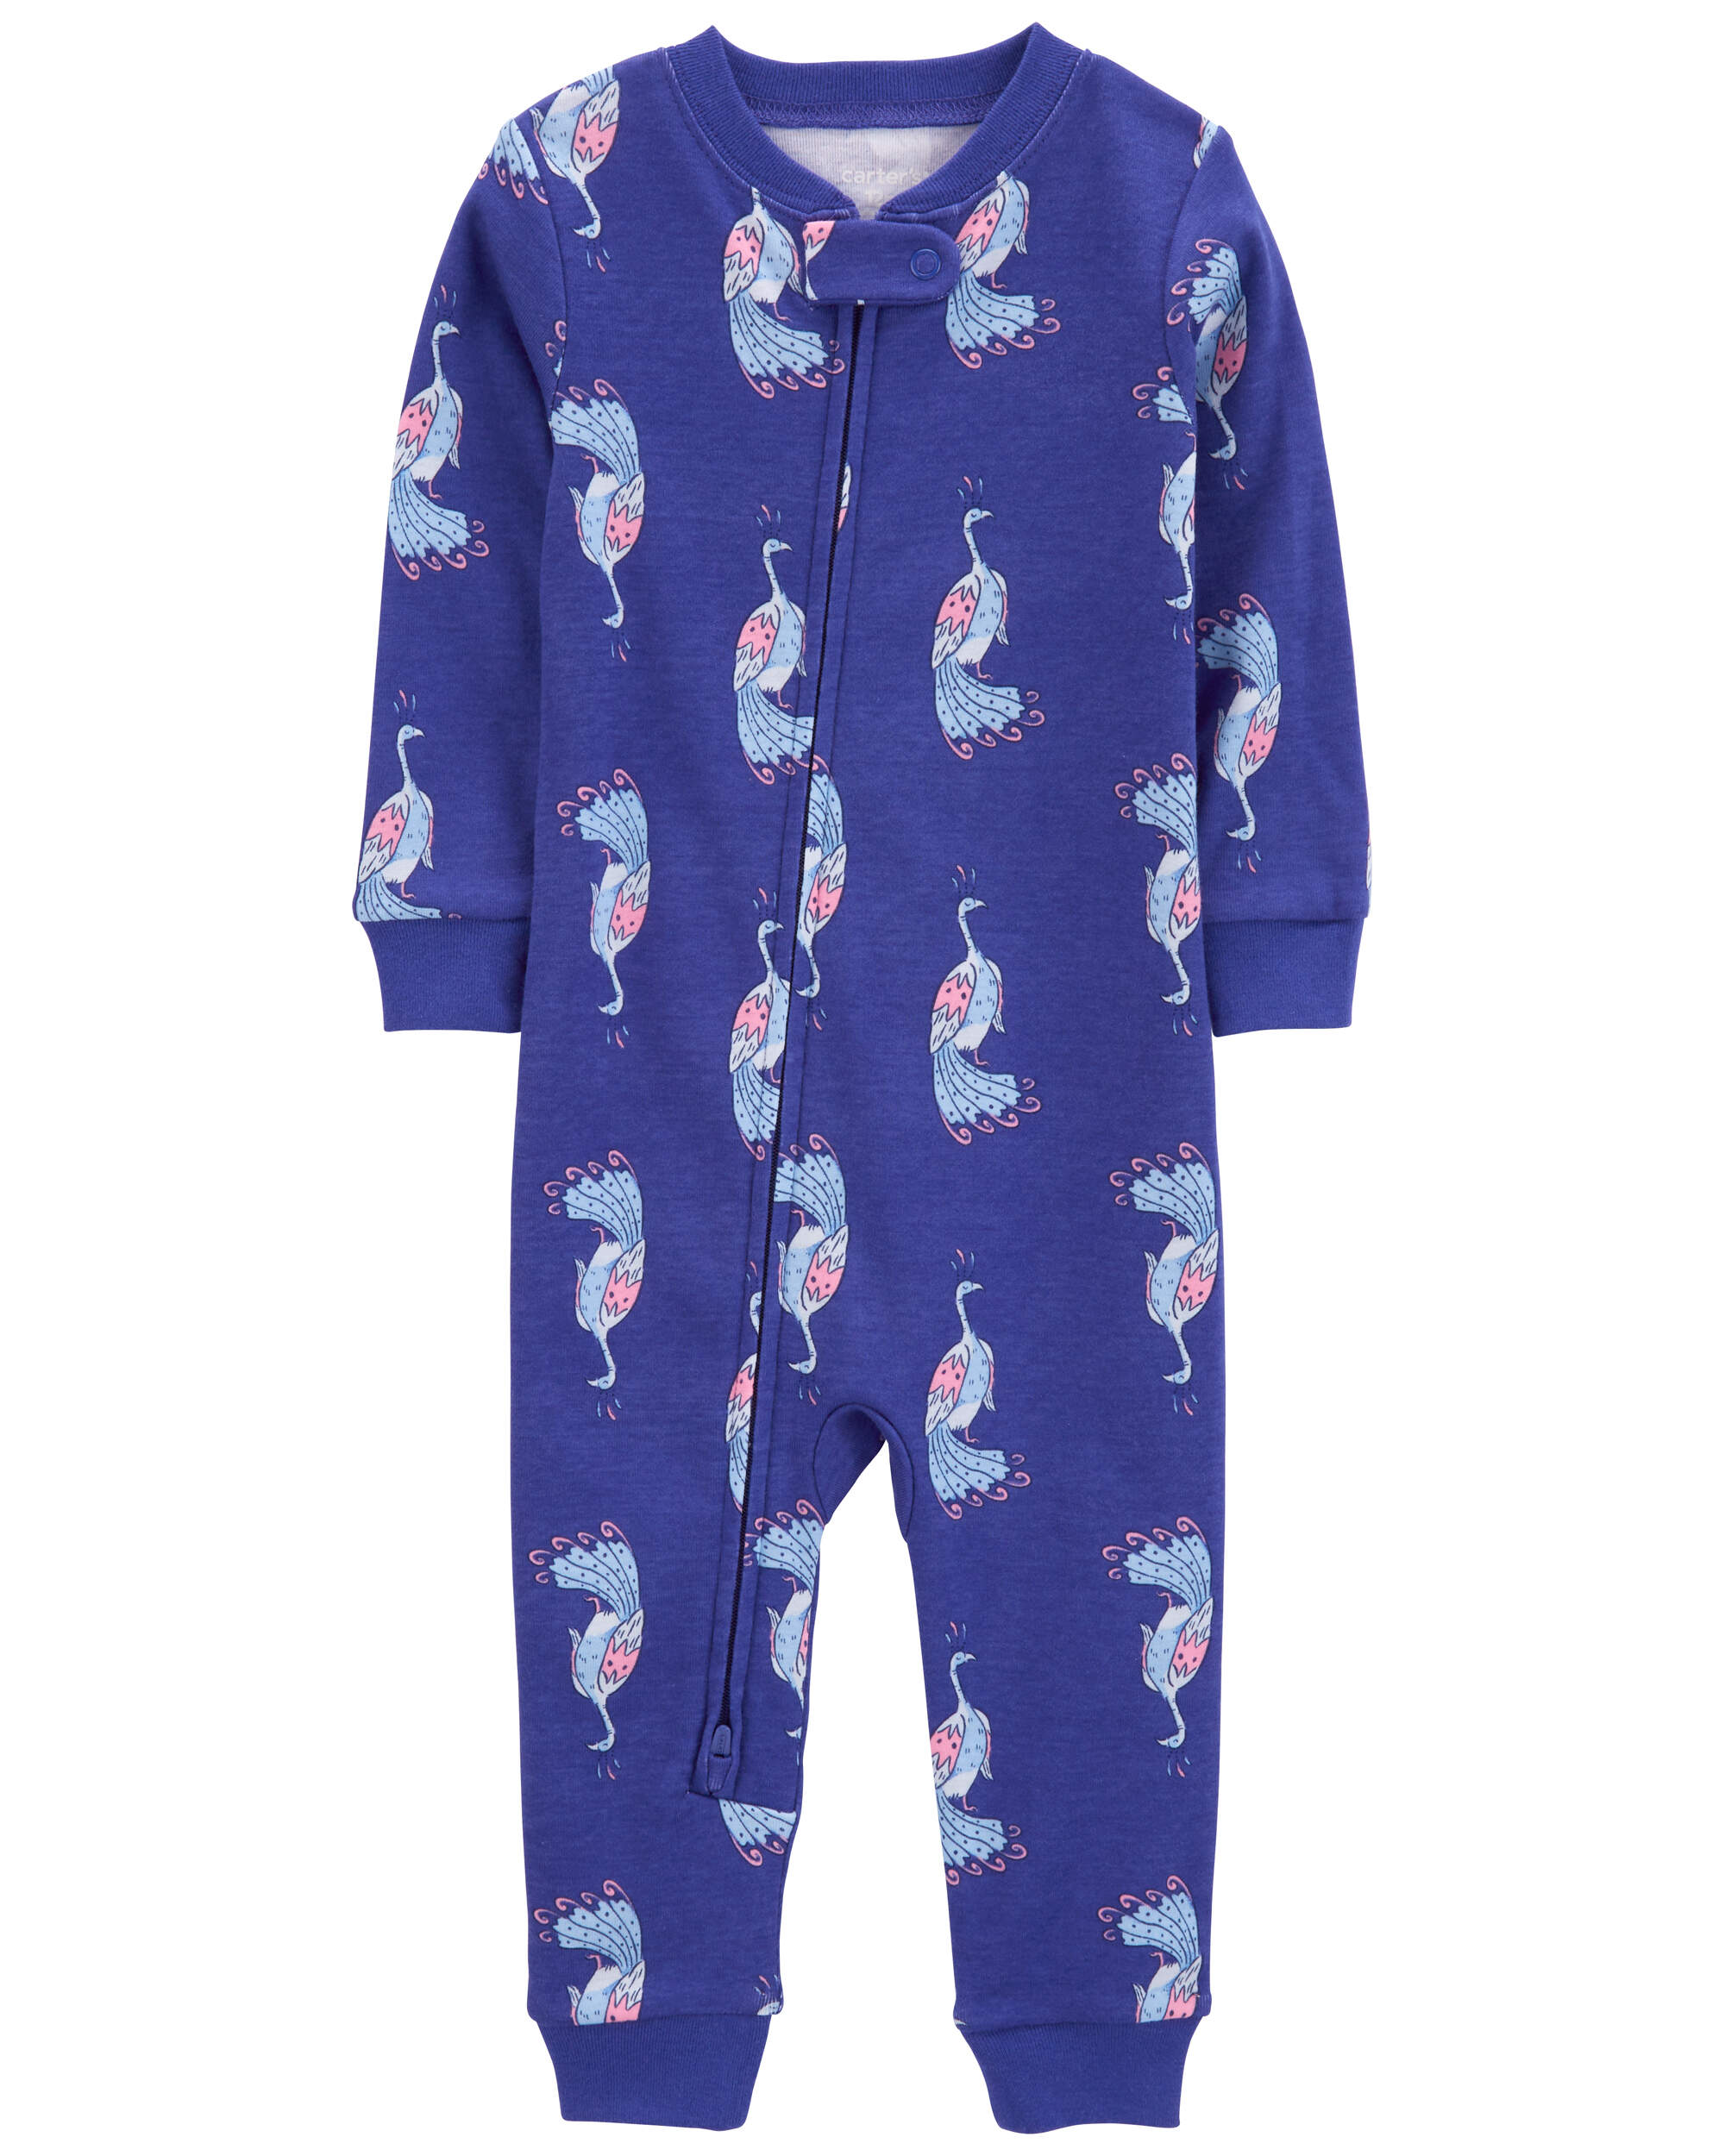 Baby 1-Piece Peacock 100% Snug Fit Cotton Footless Pyjamas